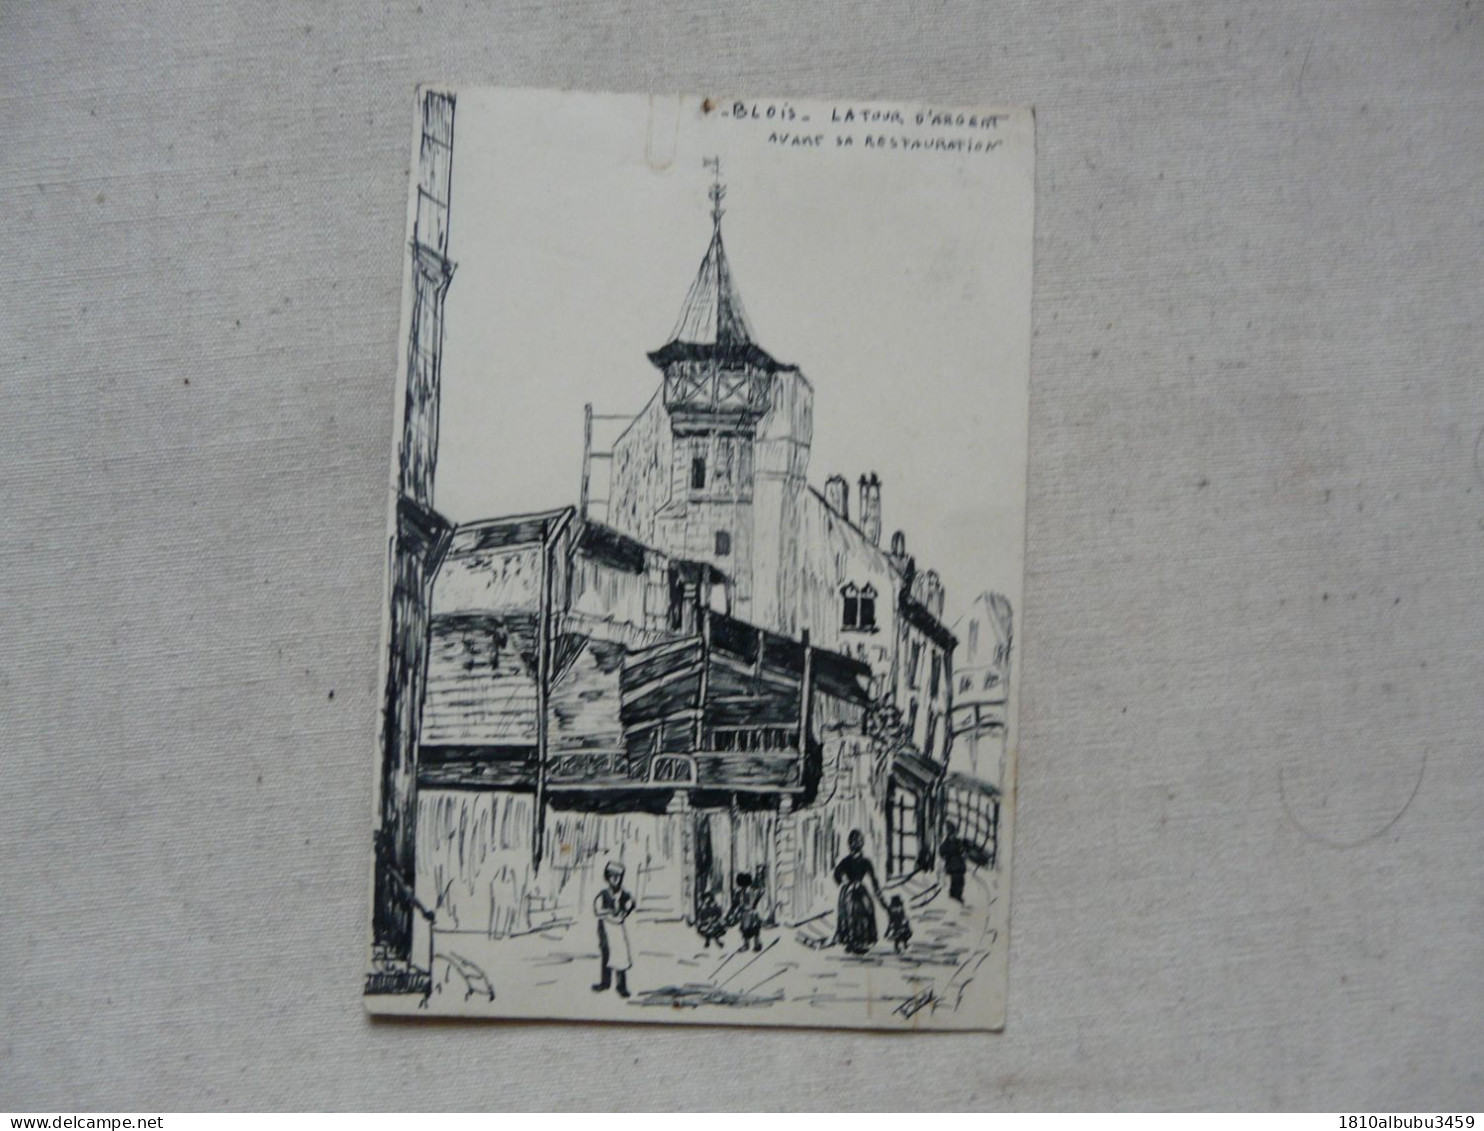 DESSIN ANCIEN Format Carte Postale : BLOIS - LA TOUR D'ARGENT Avant Sa Restauration - Dibujos